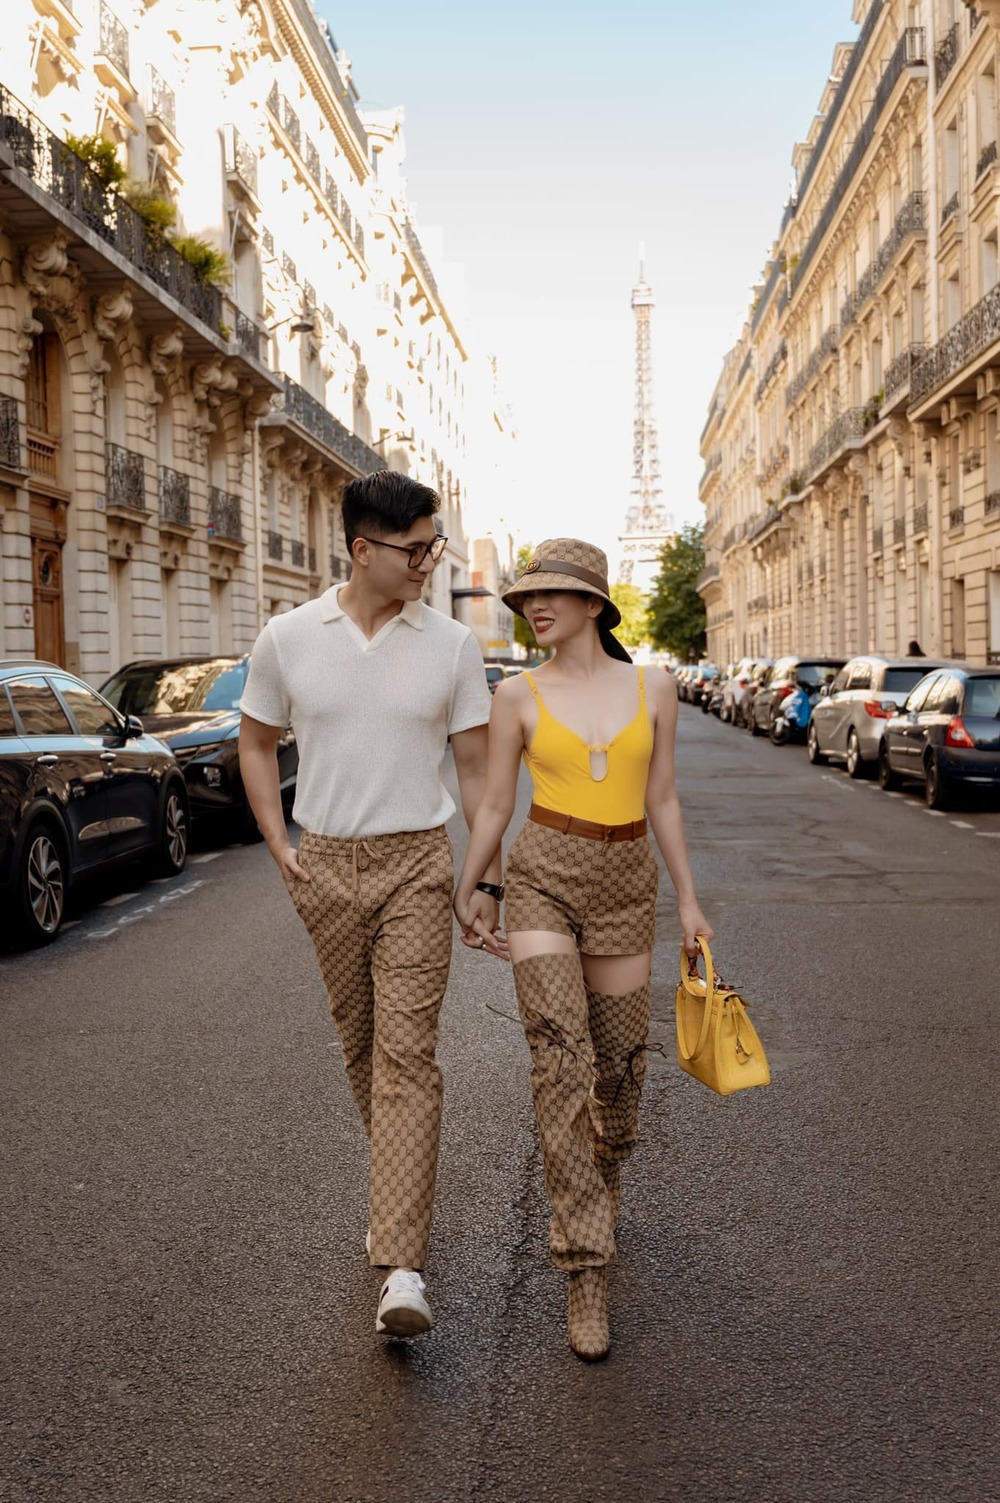  
Cặp đôi lệch tuổi tình tứ dắt tay nhau dạo bước tại "thành phố tình yêu" Paris. (Ảnh: Facebook Lâm Bảo Châu)